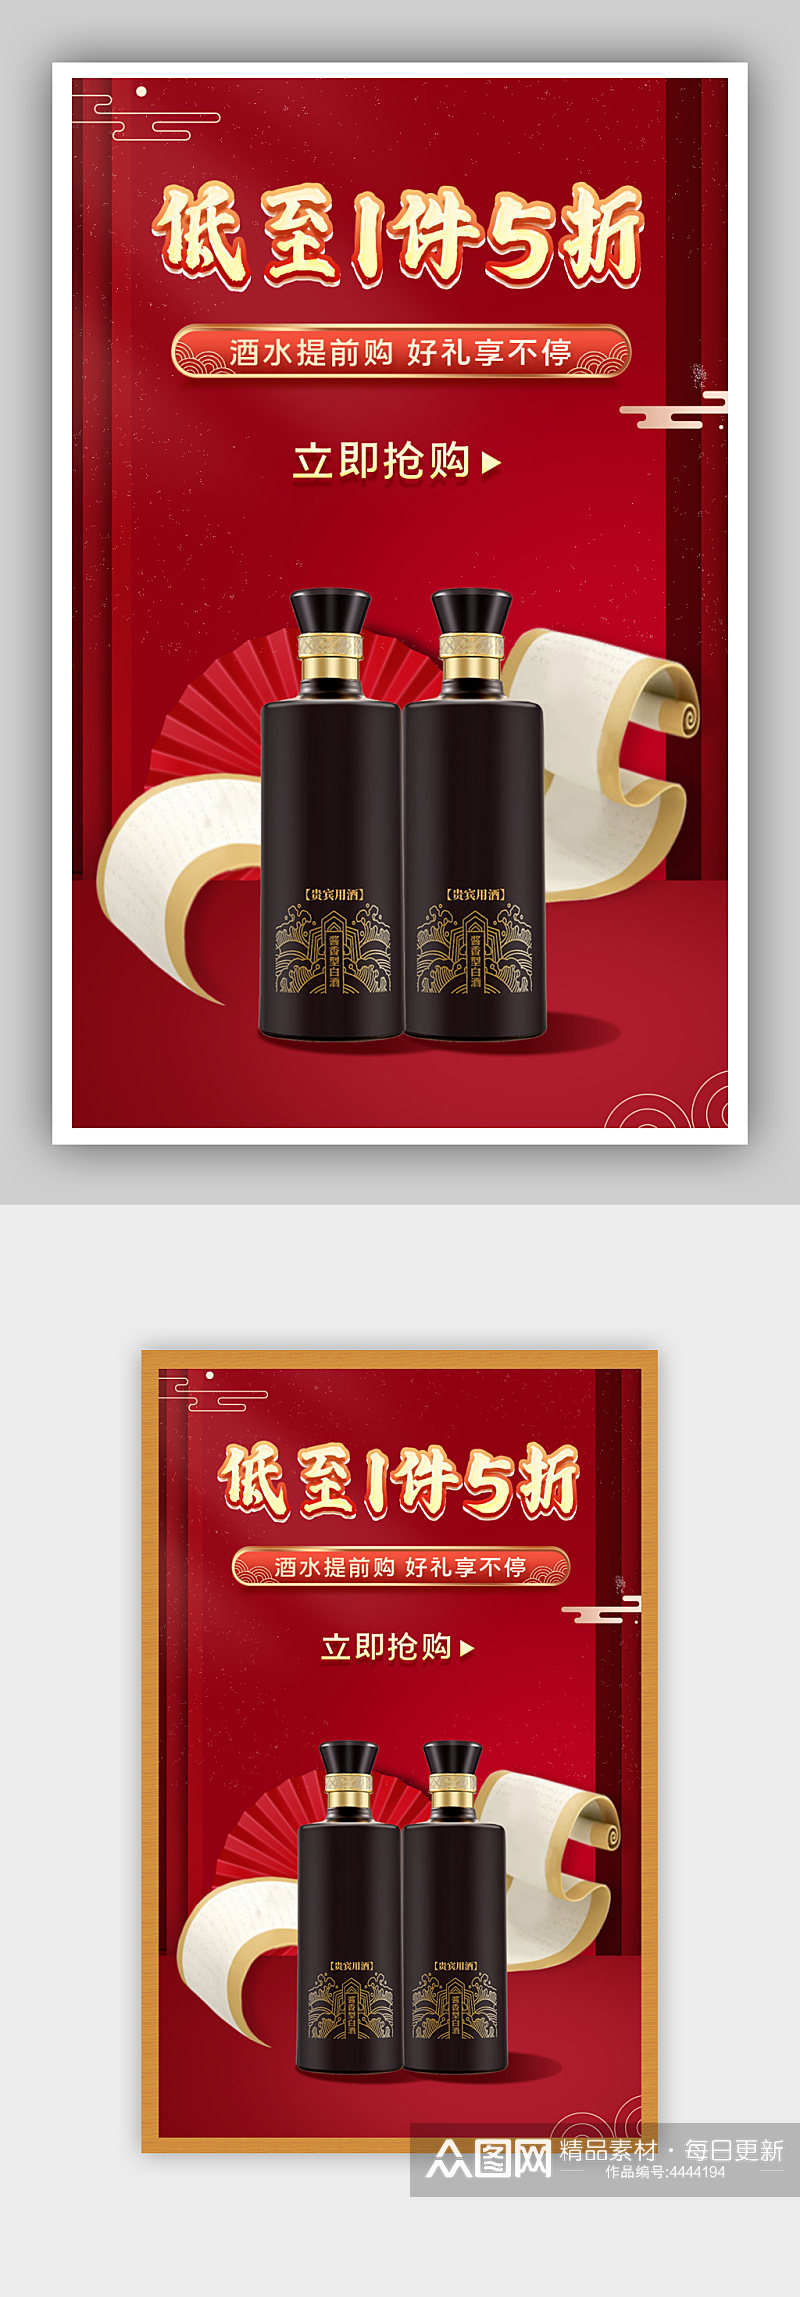 新年狂欢季元旦节酒水饮料红色中国风海报素材